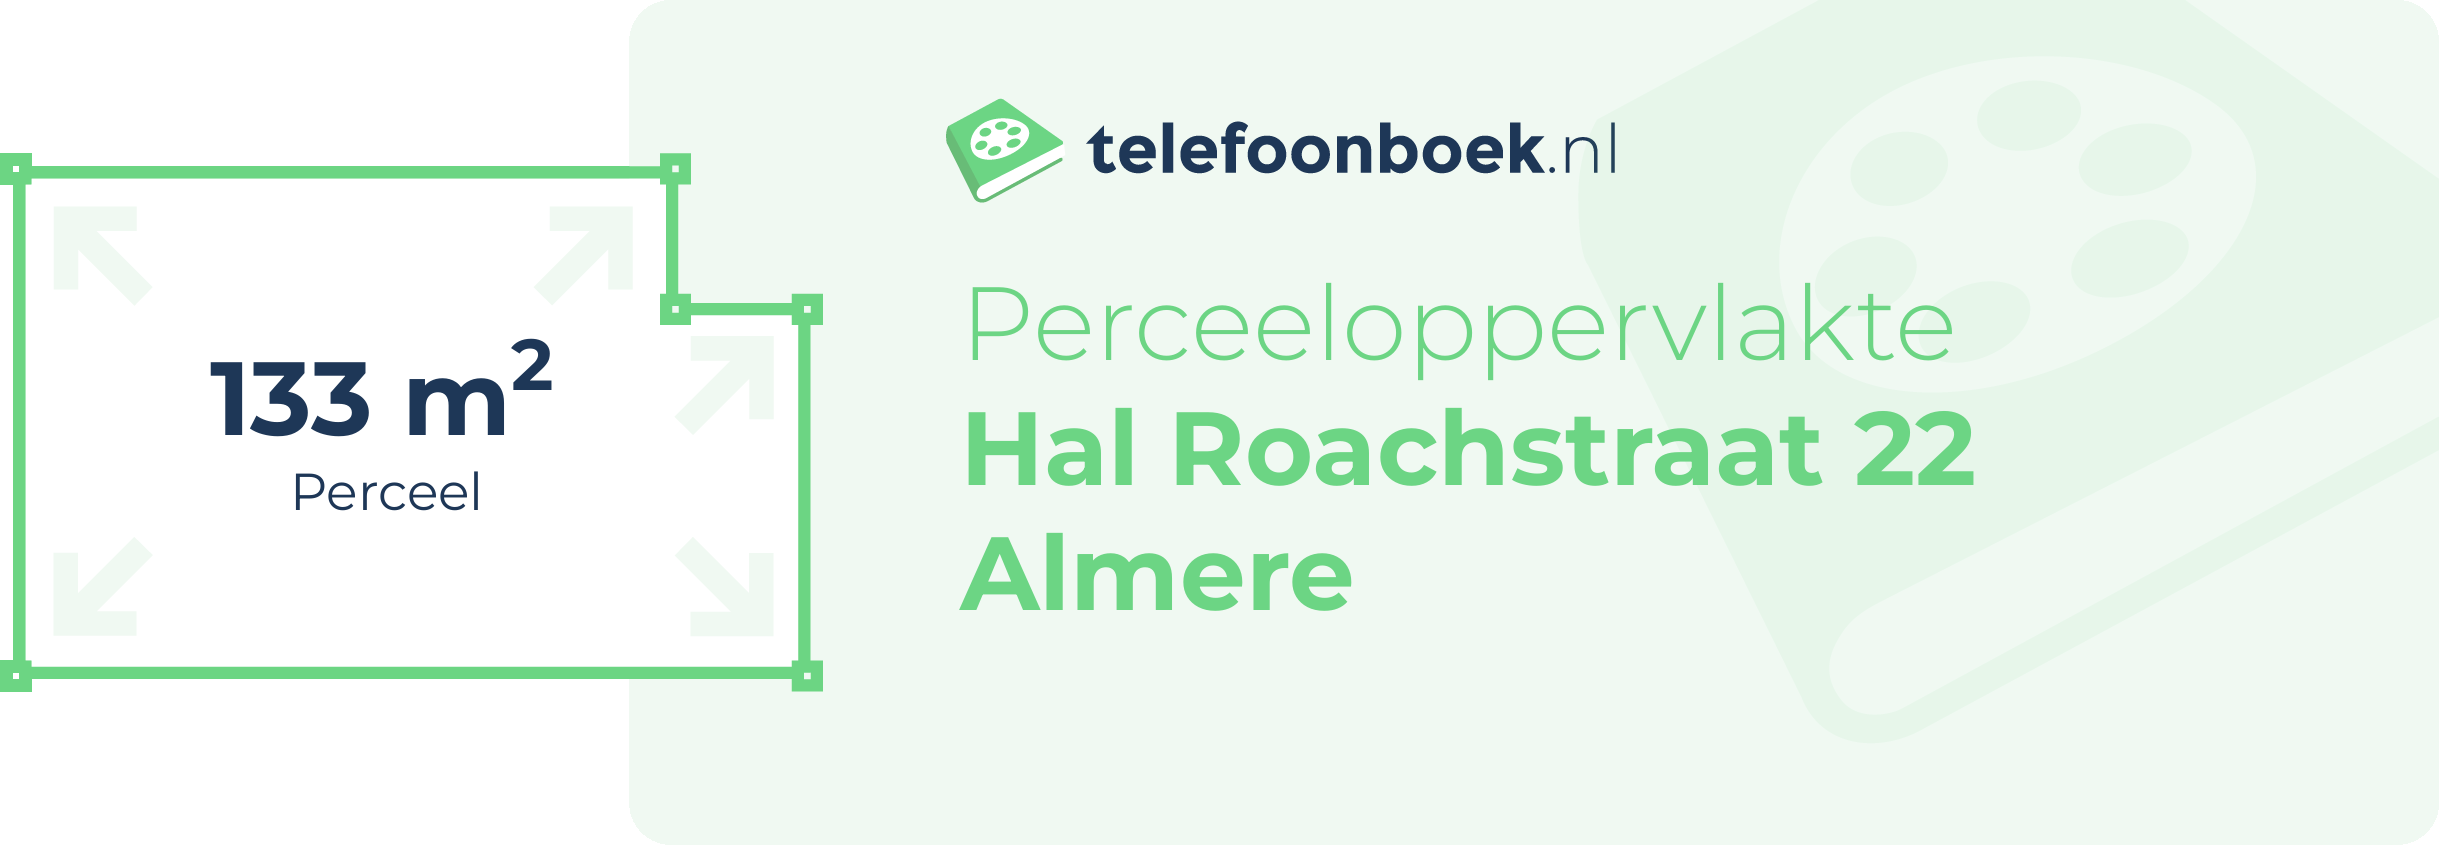 Perceeloppervlakte Hal Roachstraat 22 Almere